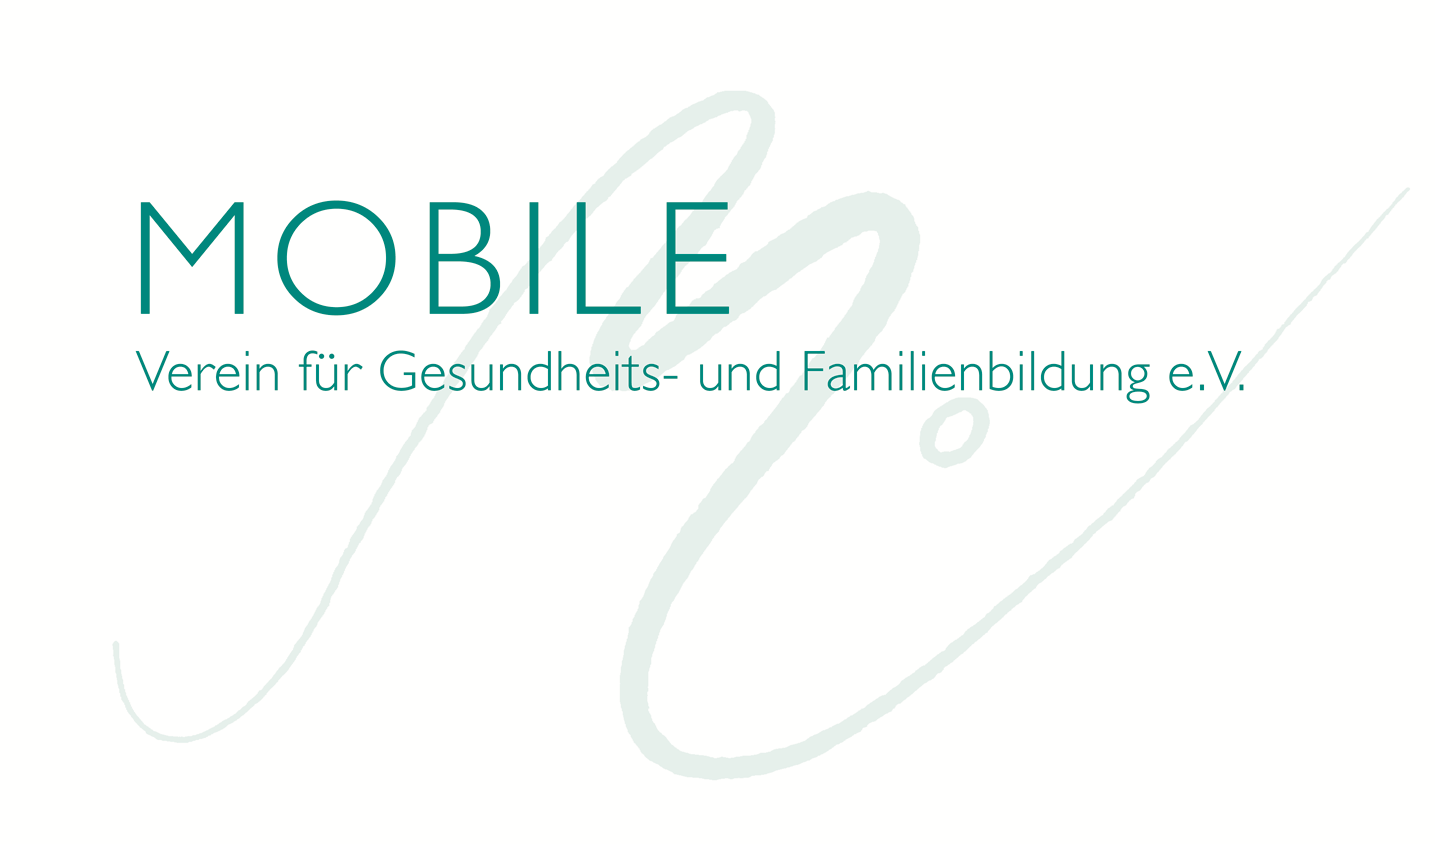 MOBILE Verein für Gesundheits- und Familienbildung e.V